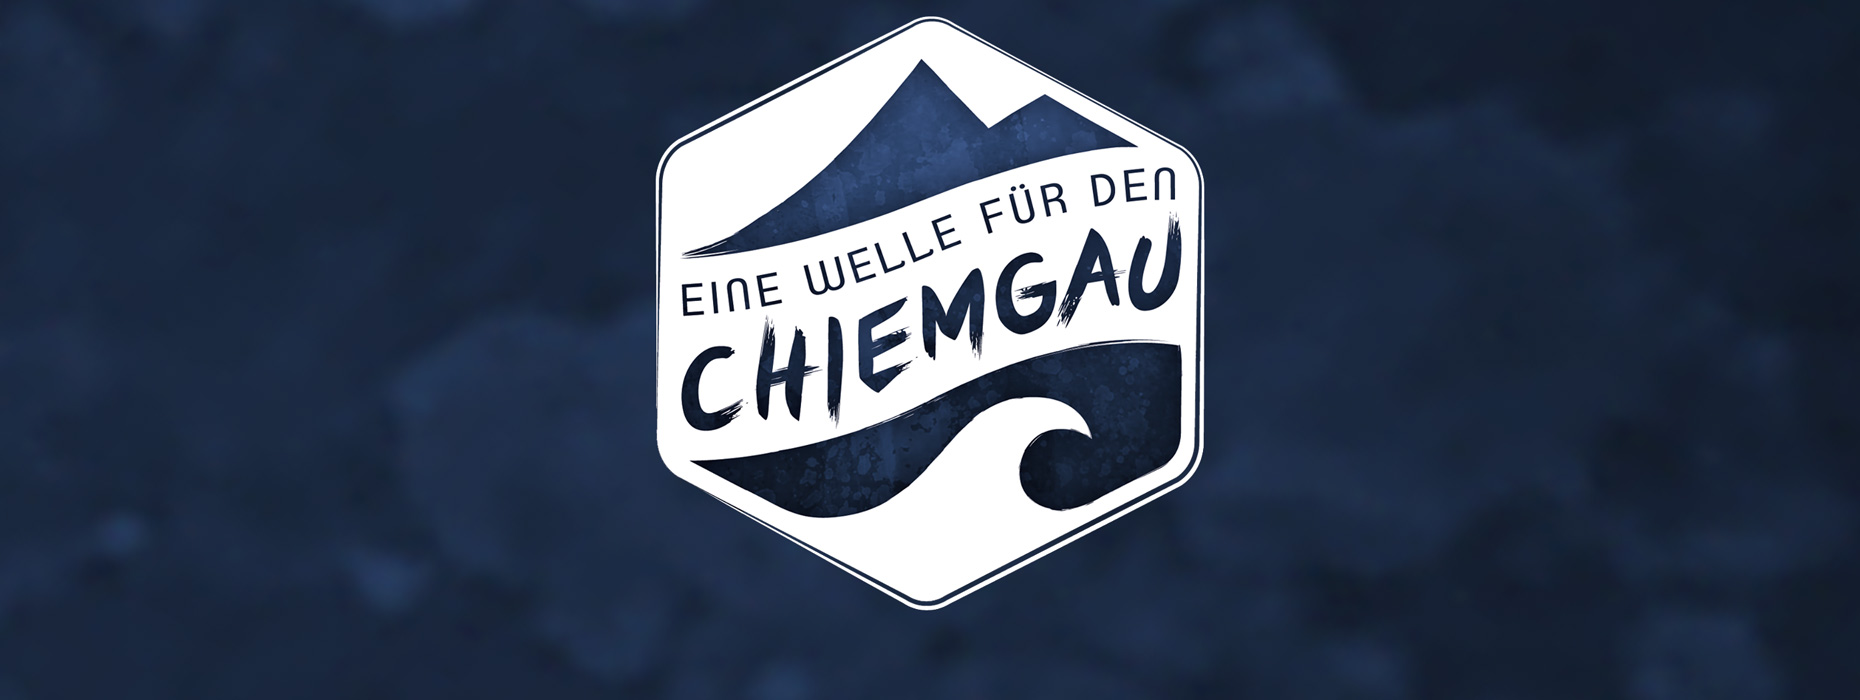 Chiemgau-River-Wave-Flusswelle-Traunstein-Wide